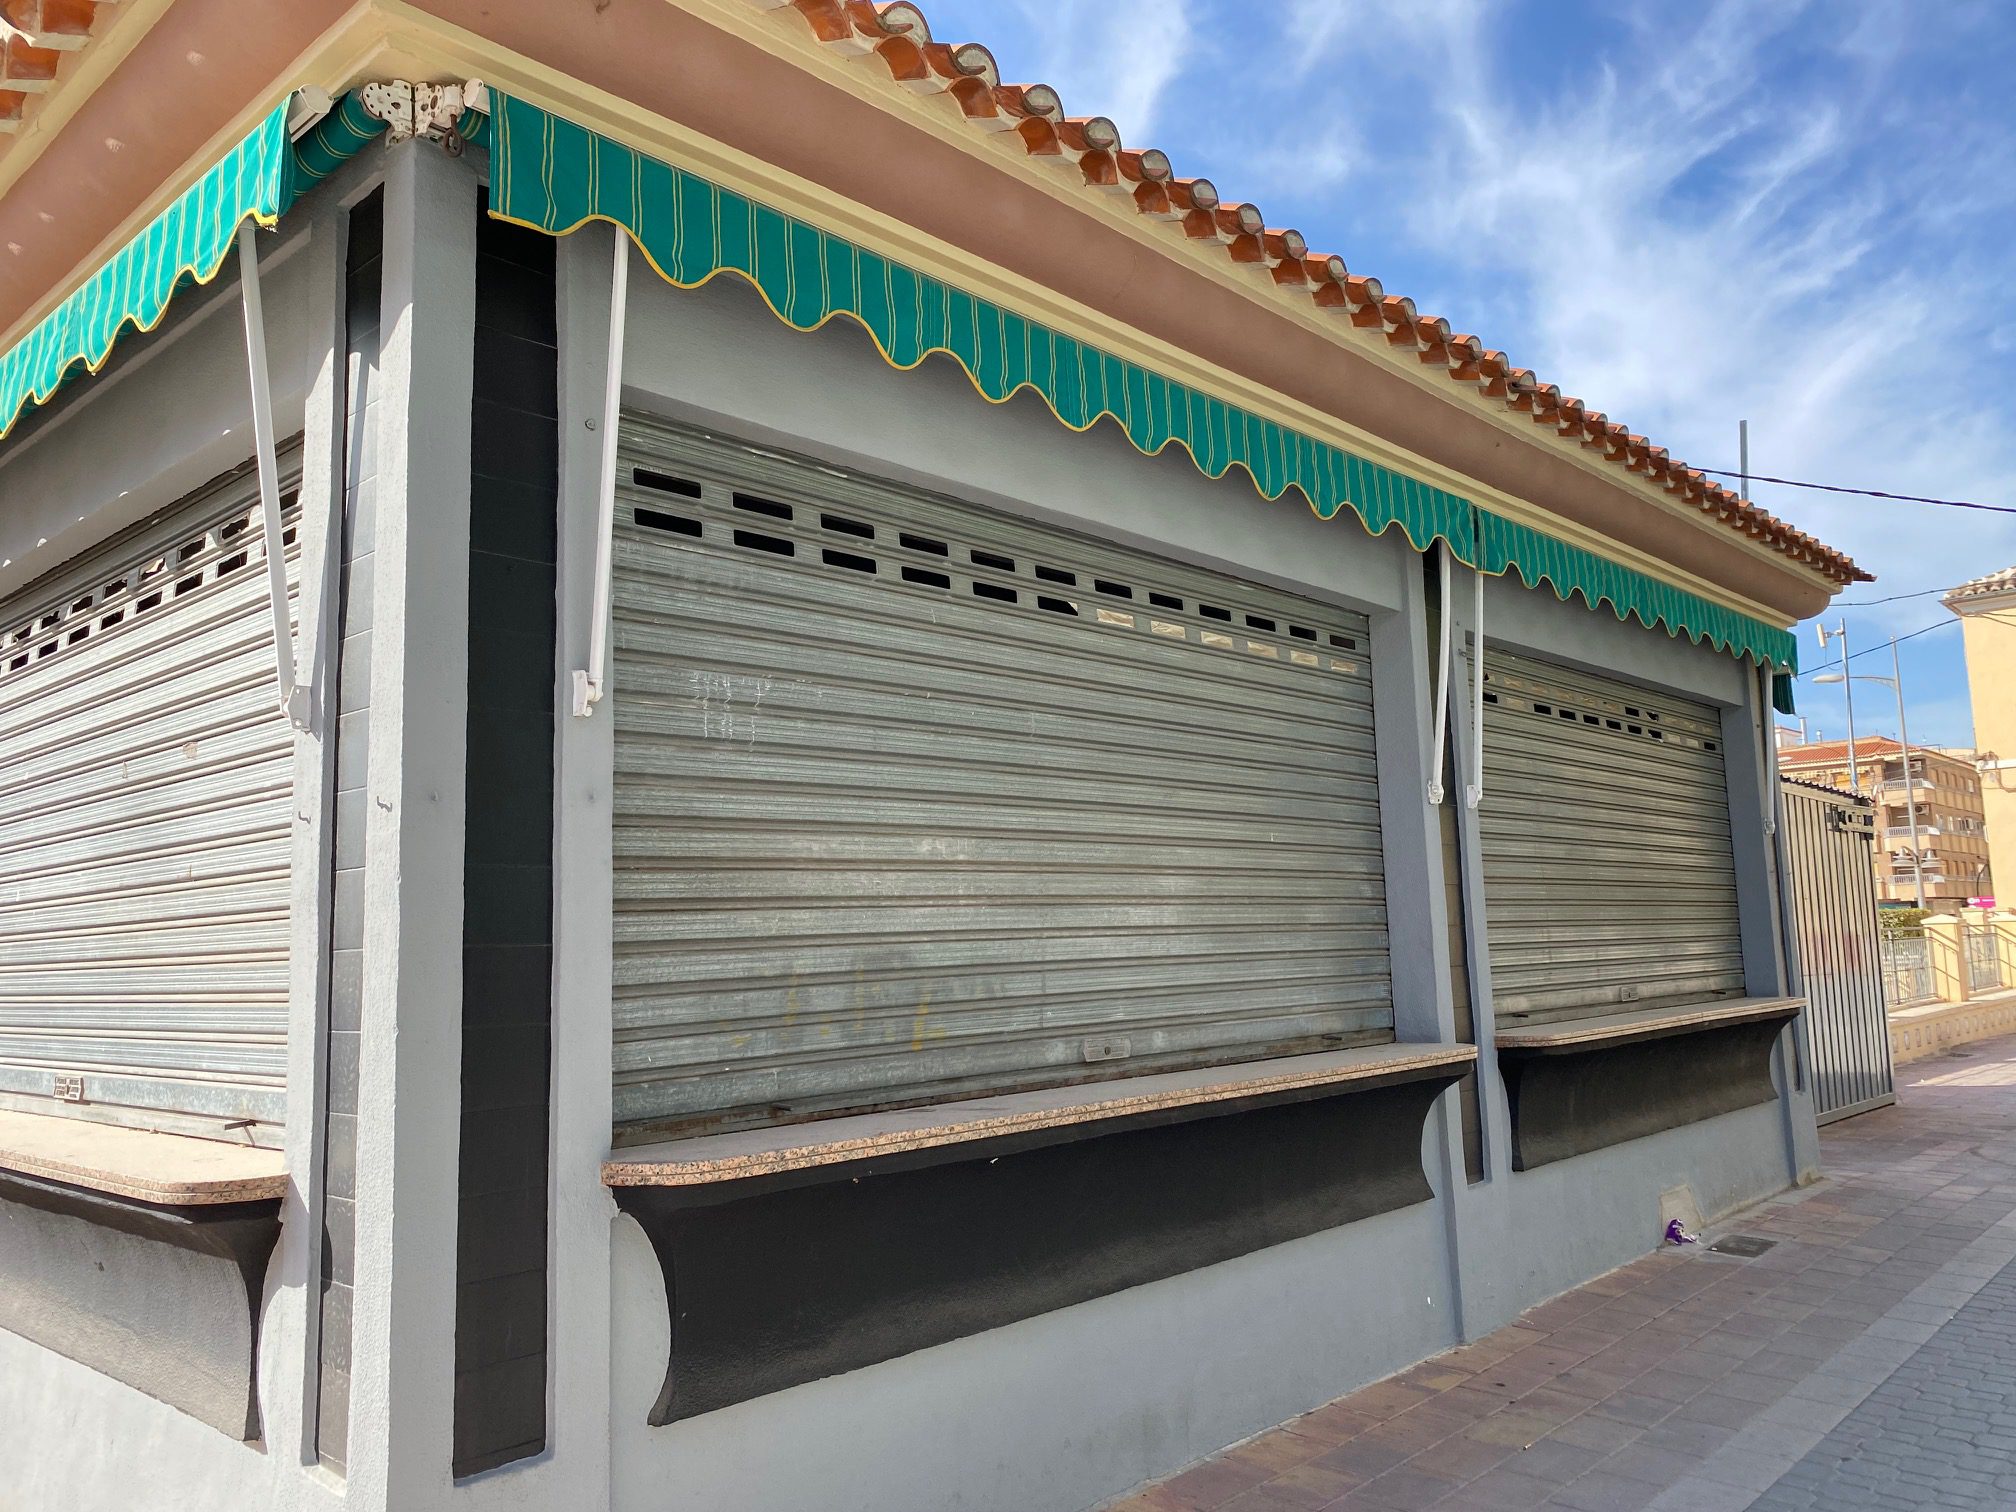 Se adjudica la cafetería del Centro Roque Baños y el quiosco del Jardín Rey D. Pedro, pero no hay propuesta para el quiosco del Polideportivo